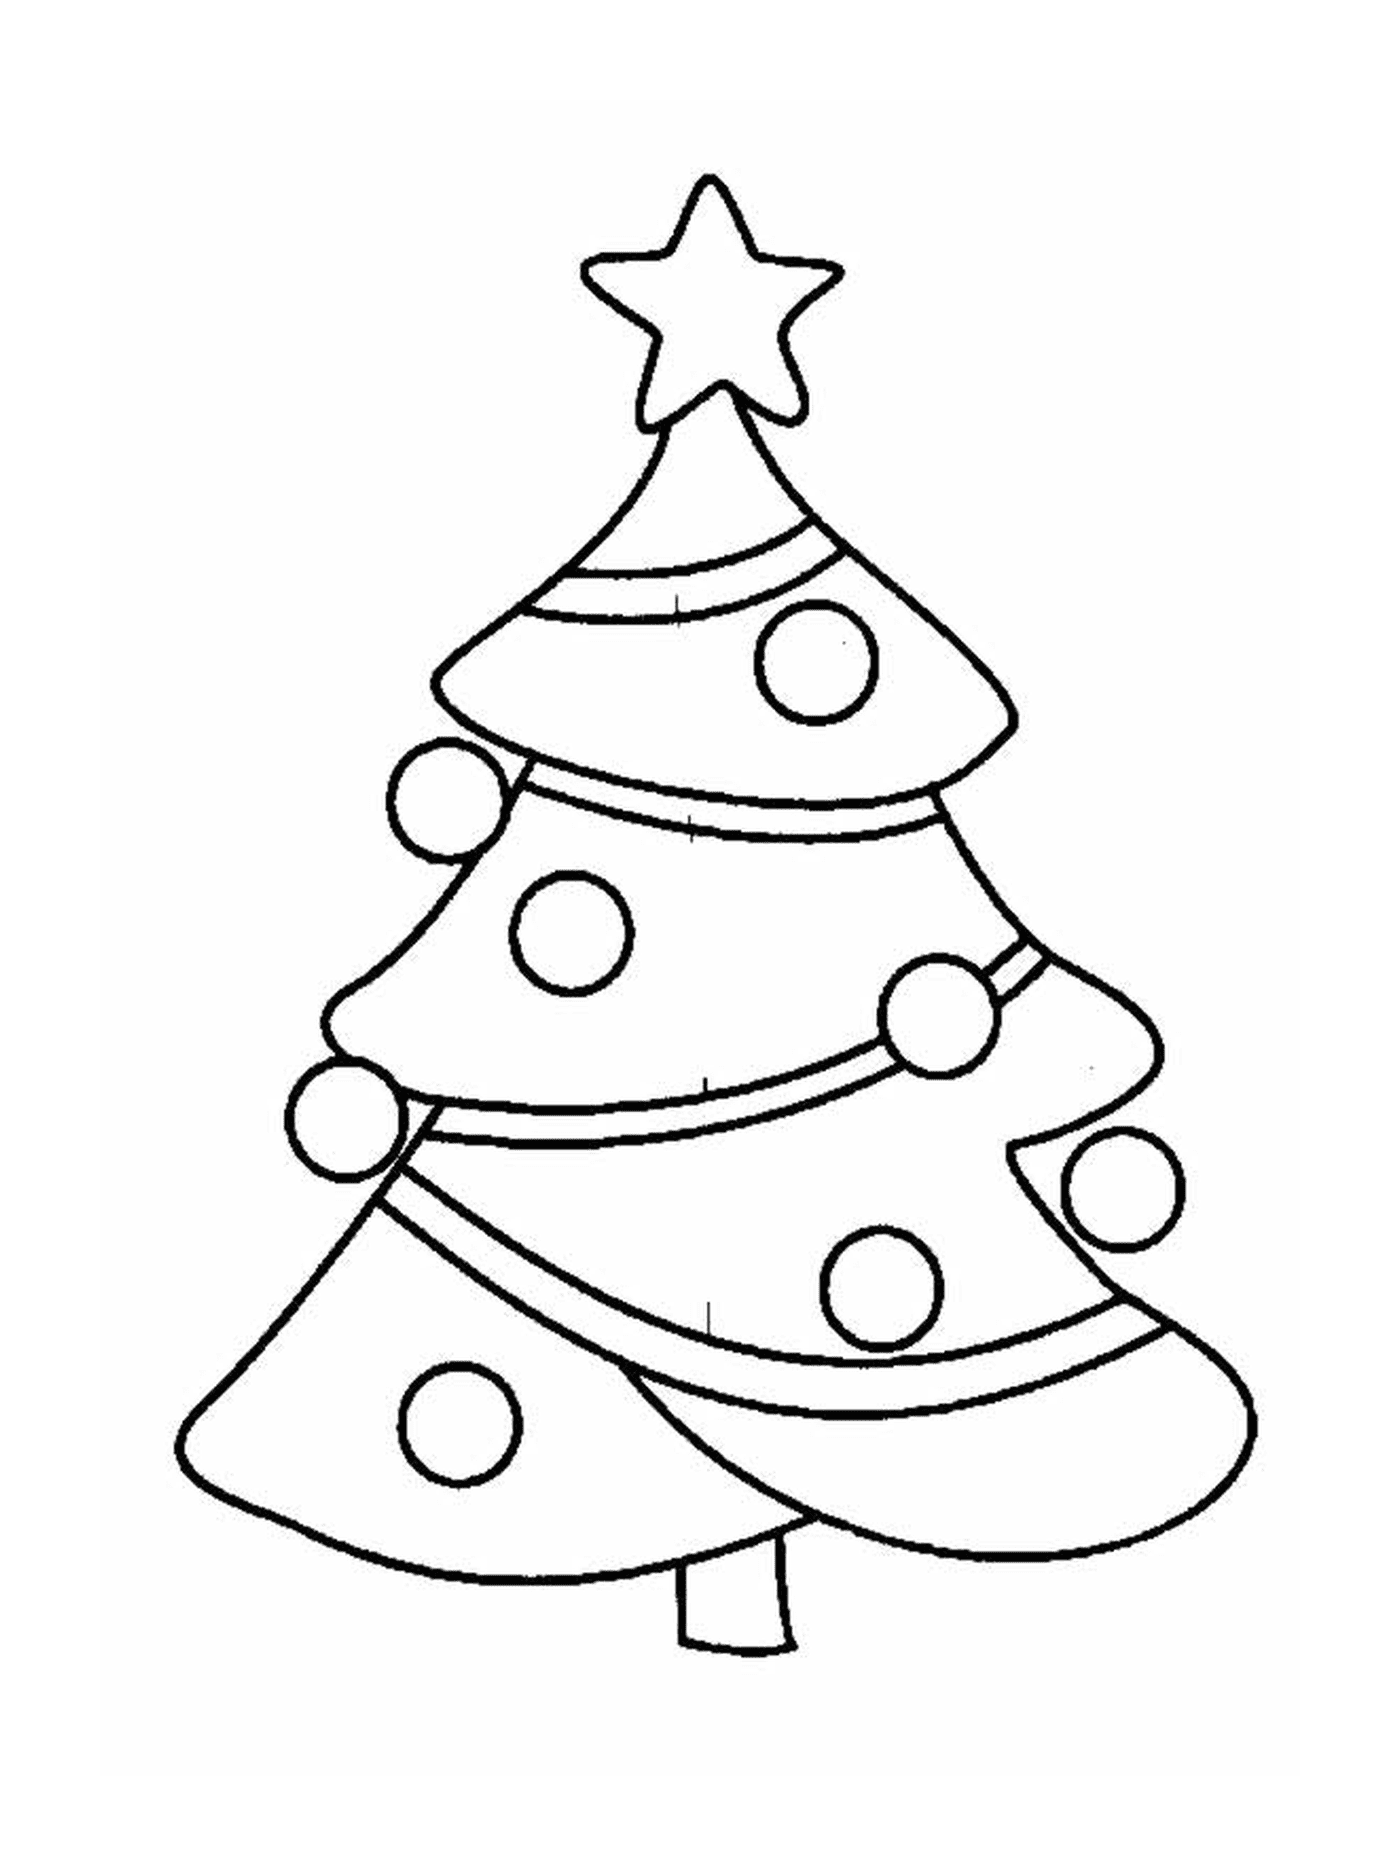  圣诞树,顶顶有装饰品 